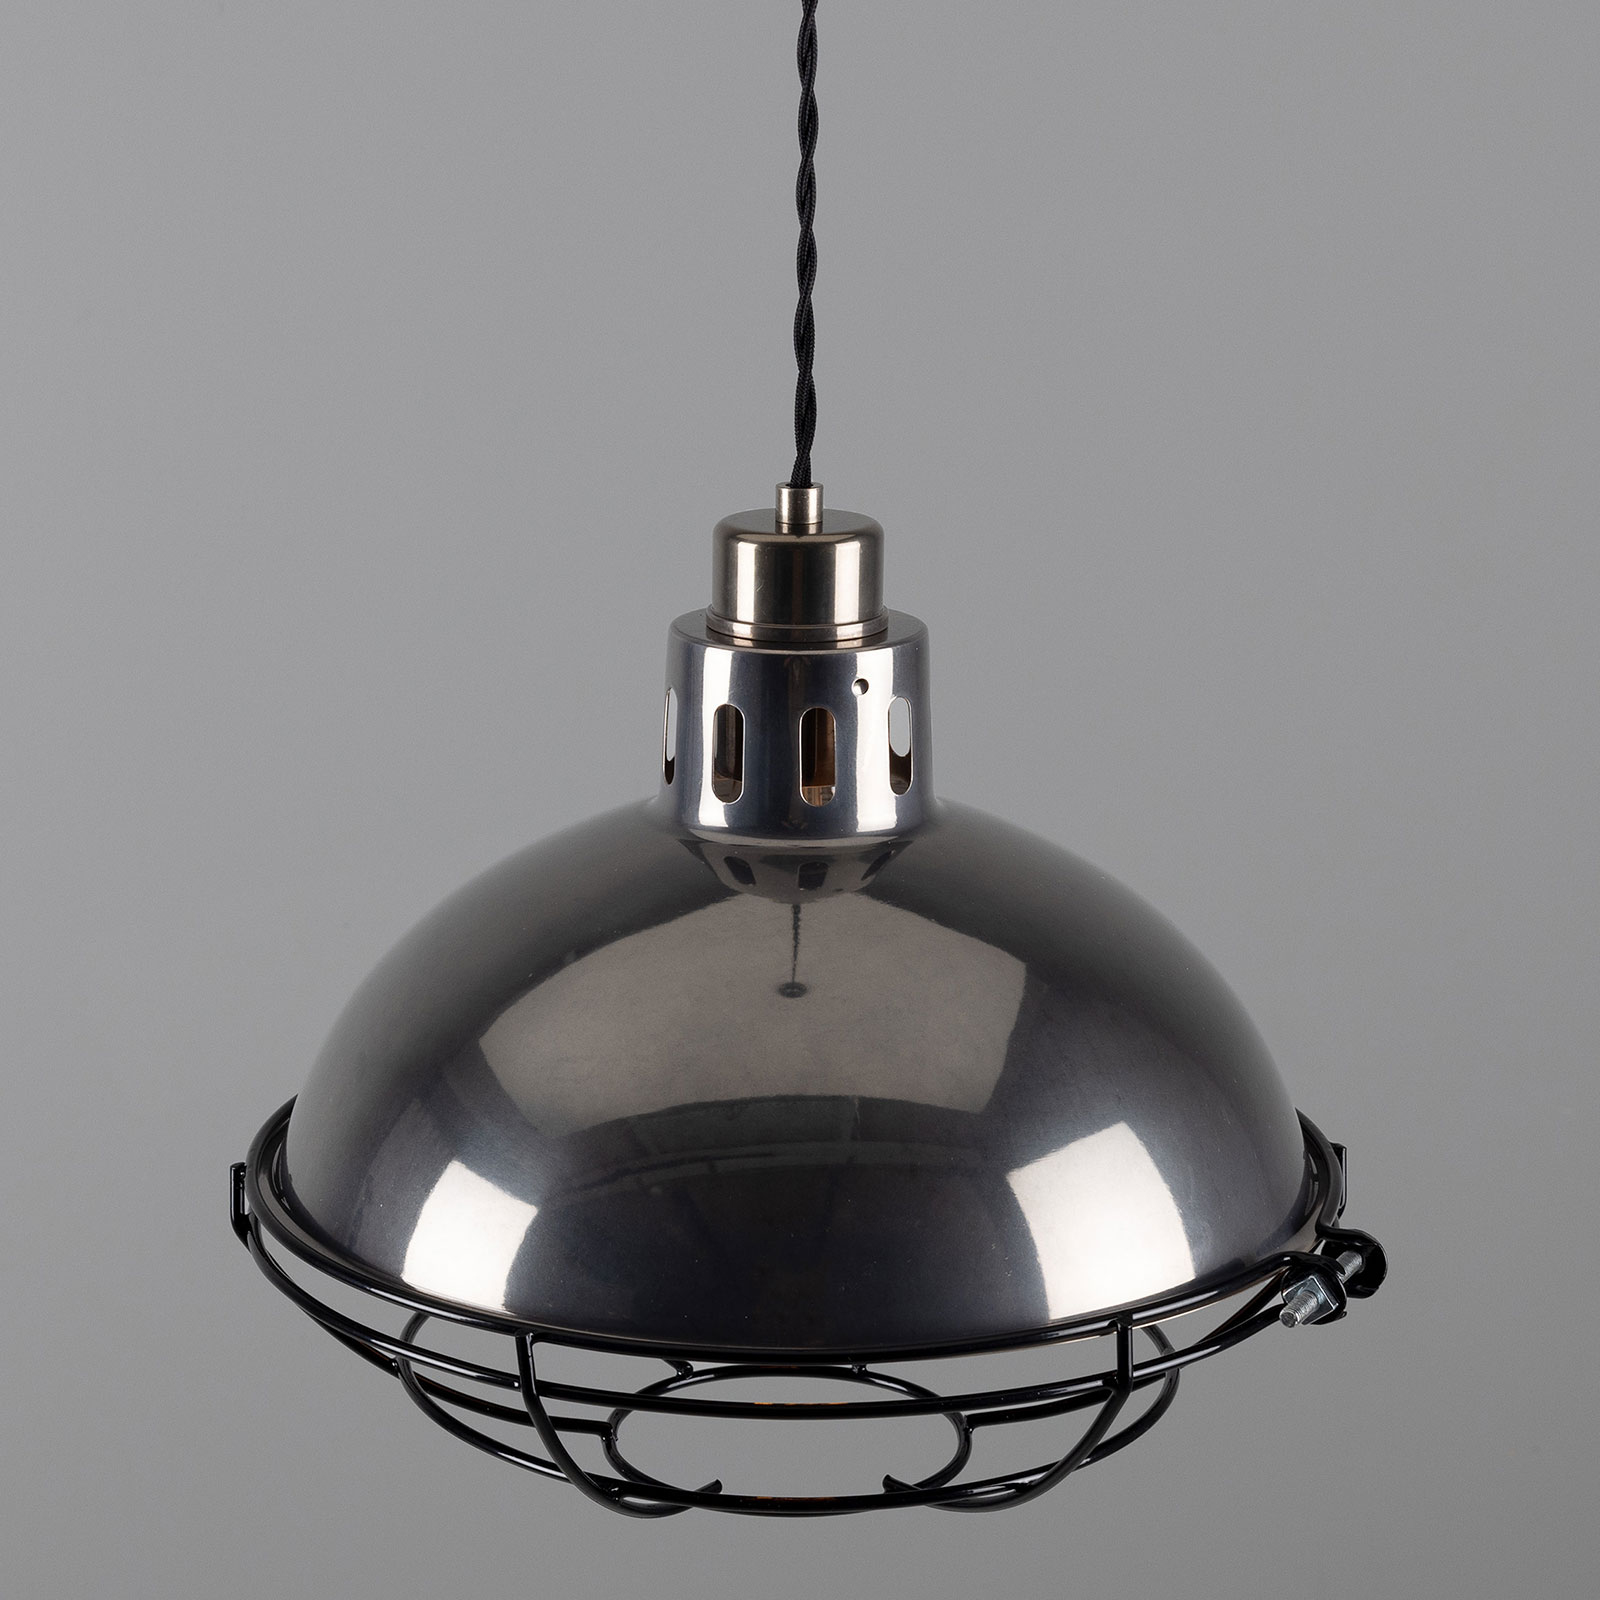 Klassische Fabriklampe aus Messing mit Schutzgitter-Käfig, 32 cm: Messing alt-silbern patiniert